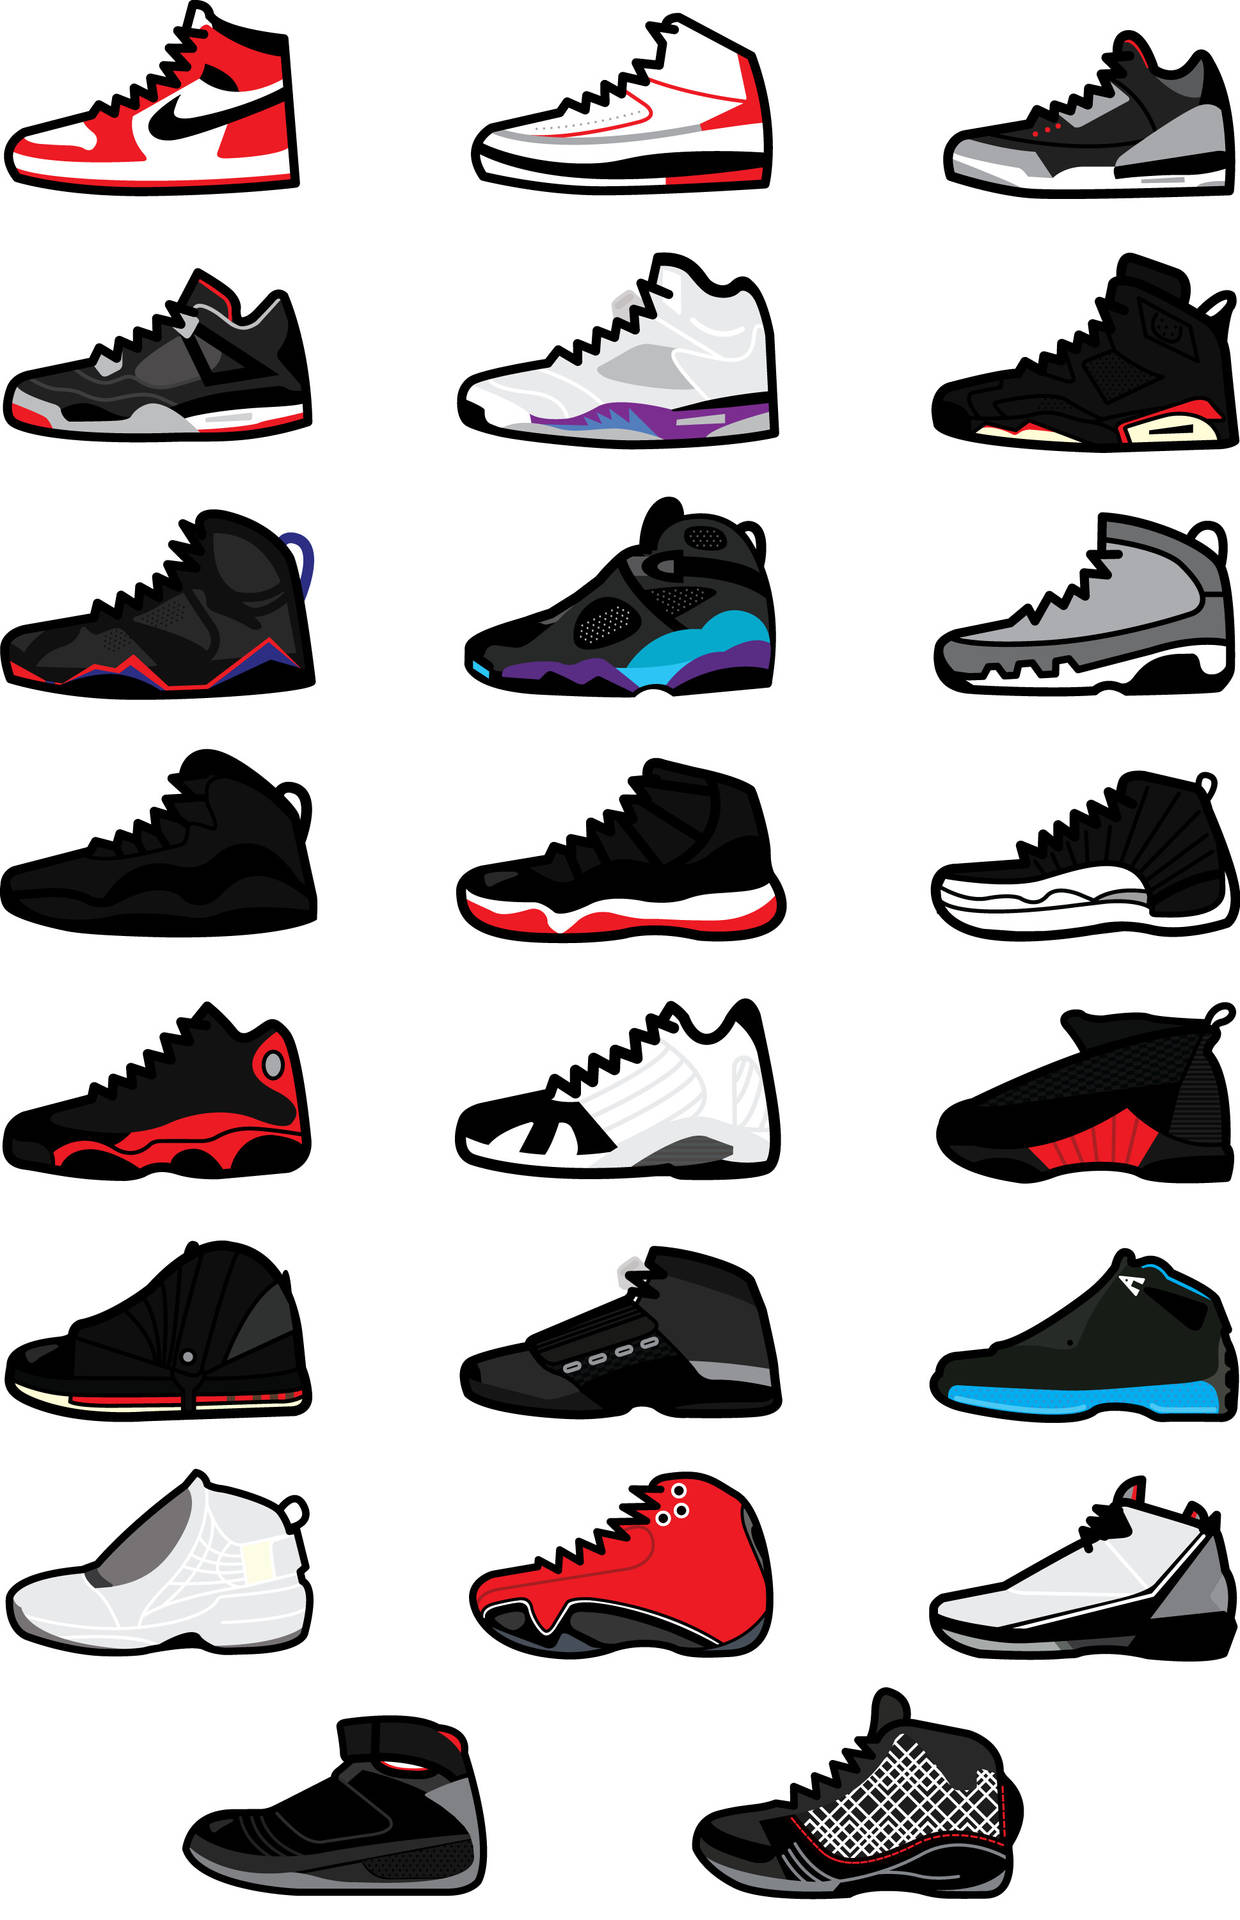 Air Jordan Cartoon Shoe Art Wallpaper